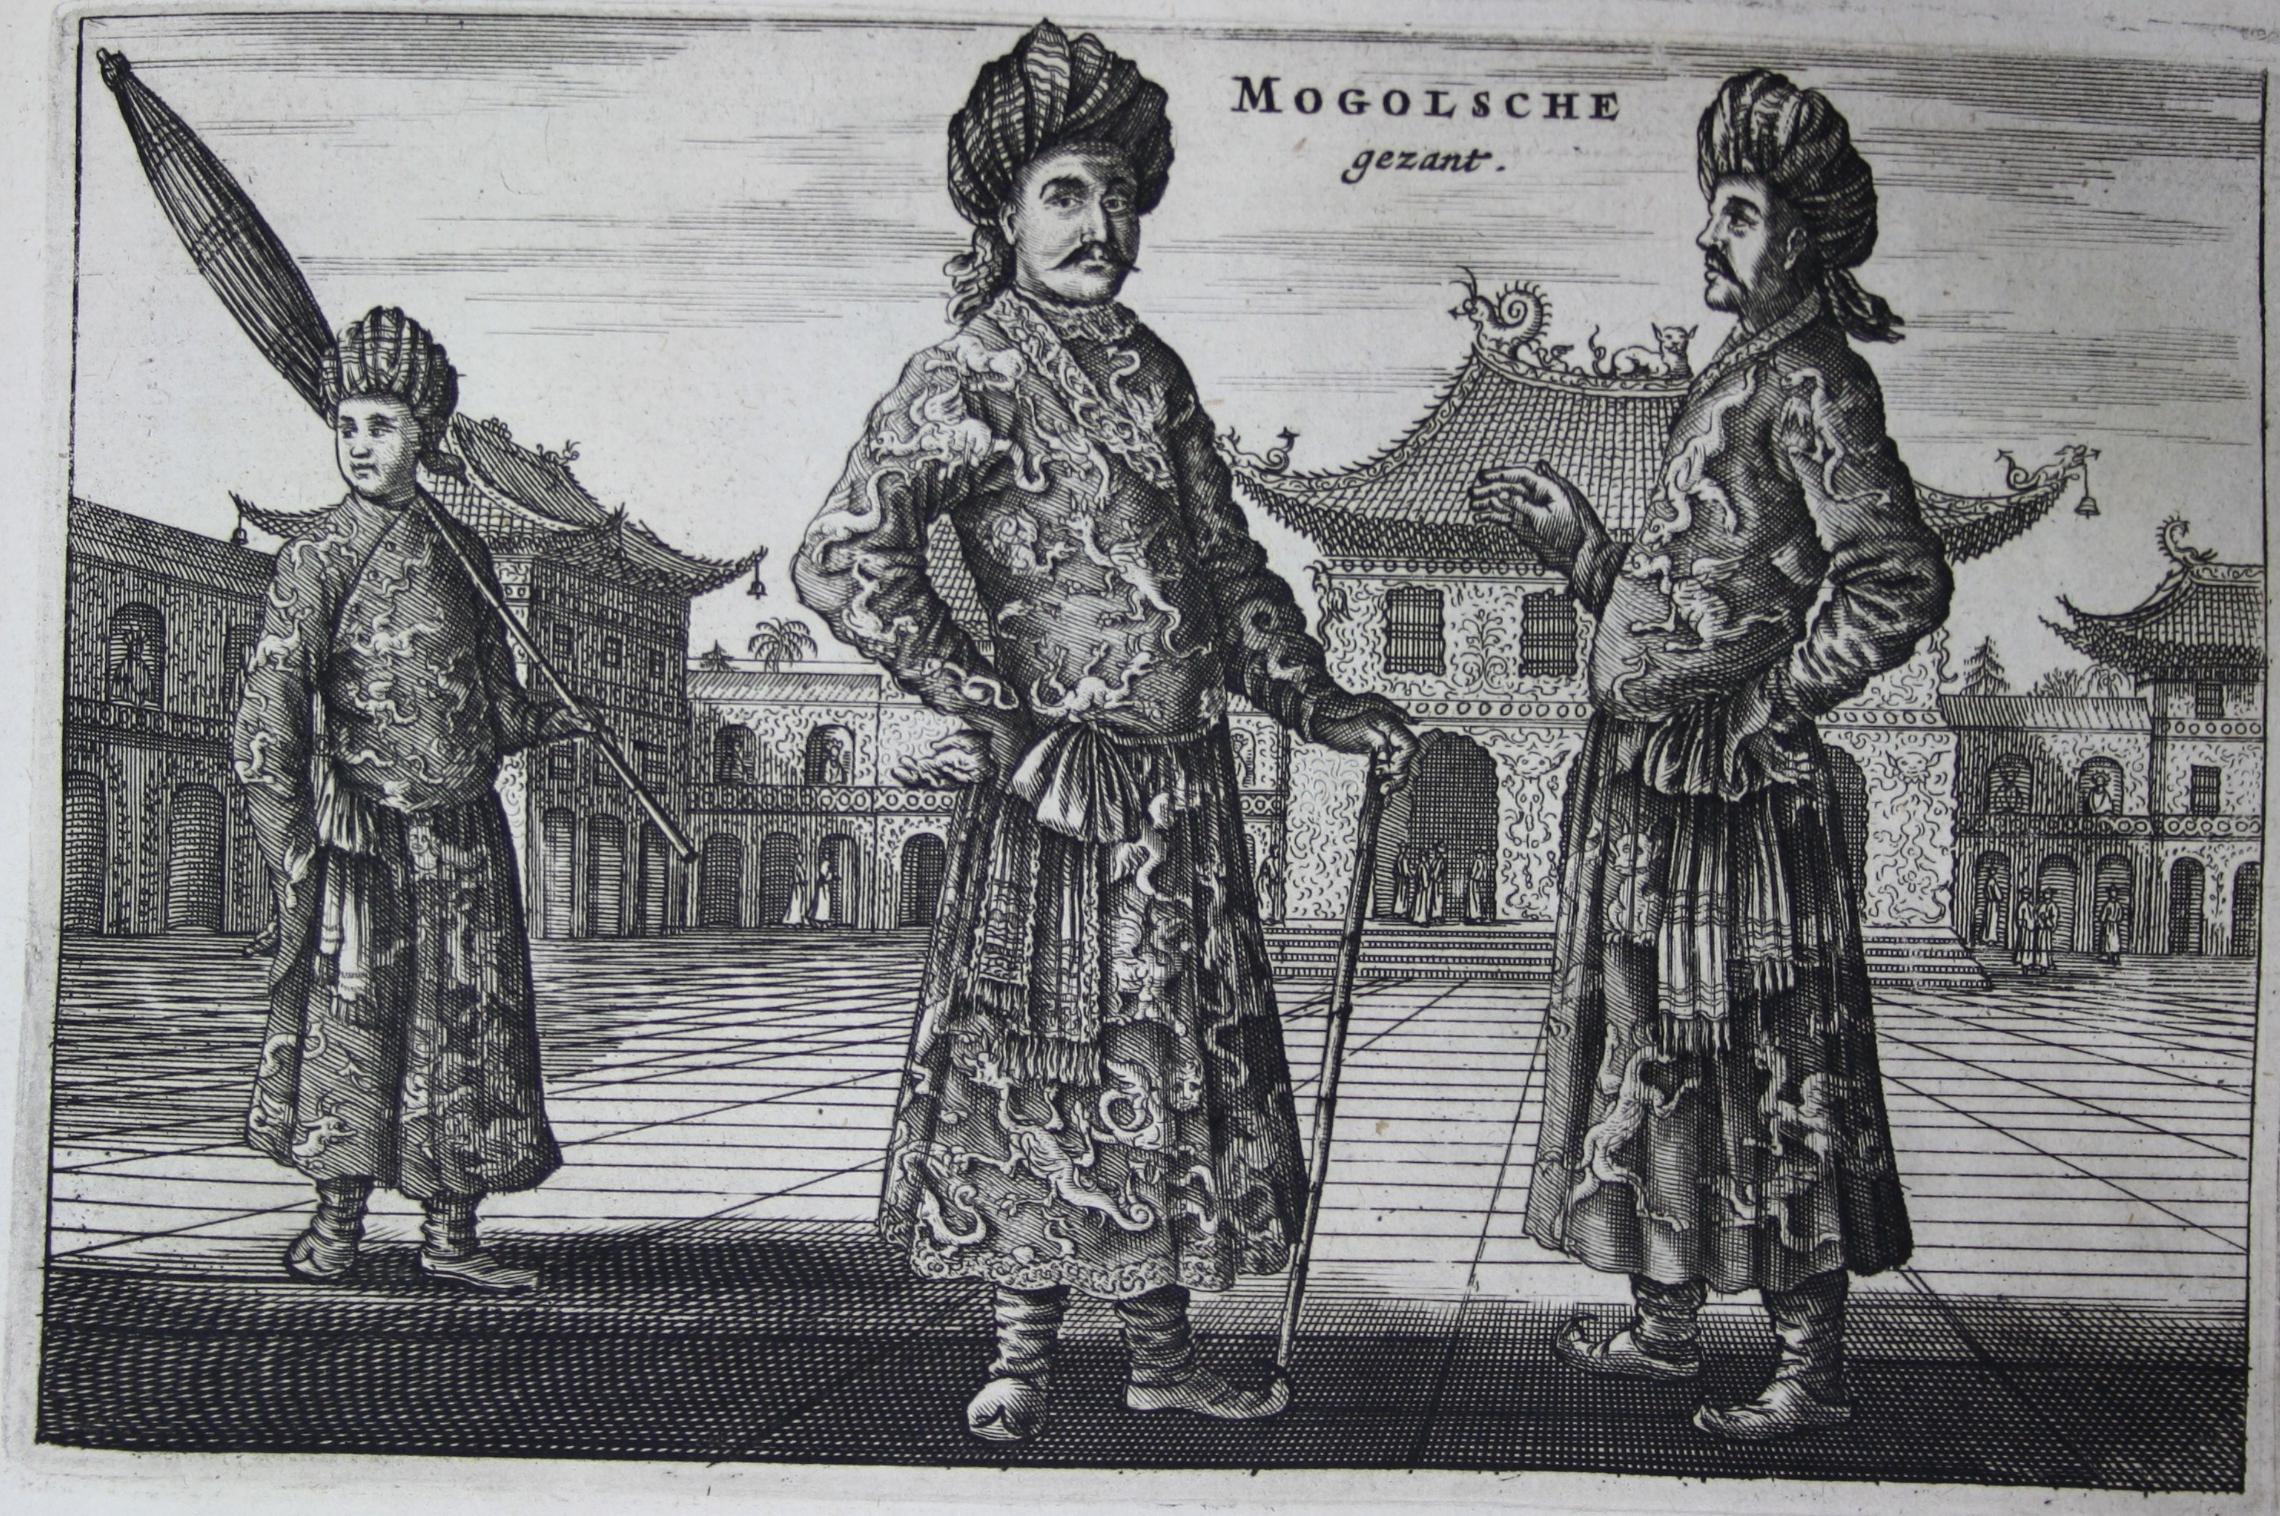 Mongolen - Joan Nieuhof, Het Gesantschap Der Neerlandtsche Oost-Indische Compagnie ... Keizer van China Amsterdam 1665 (Martinus-Bibliothek Mainz, 13/1091) (c) Martinus-Bibliothek